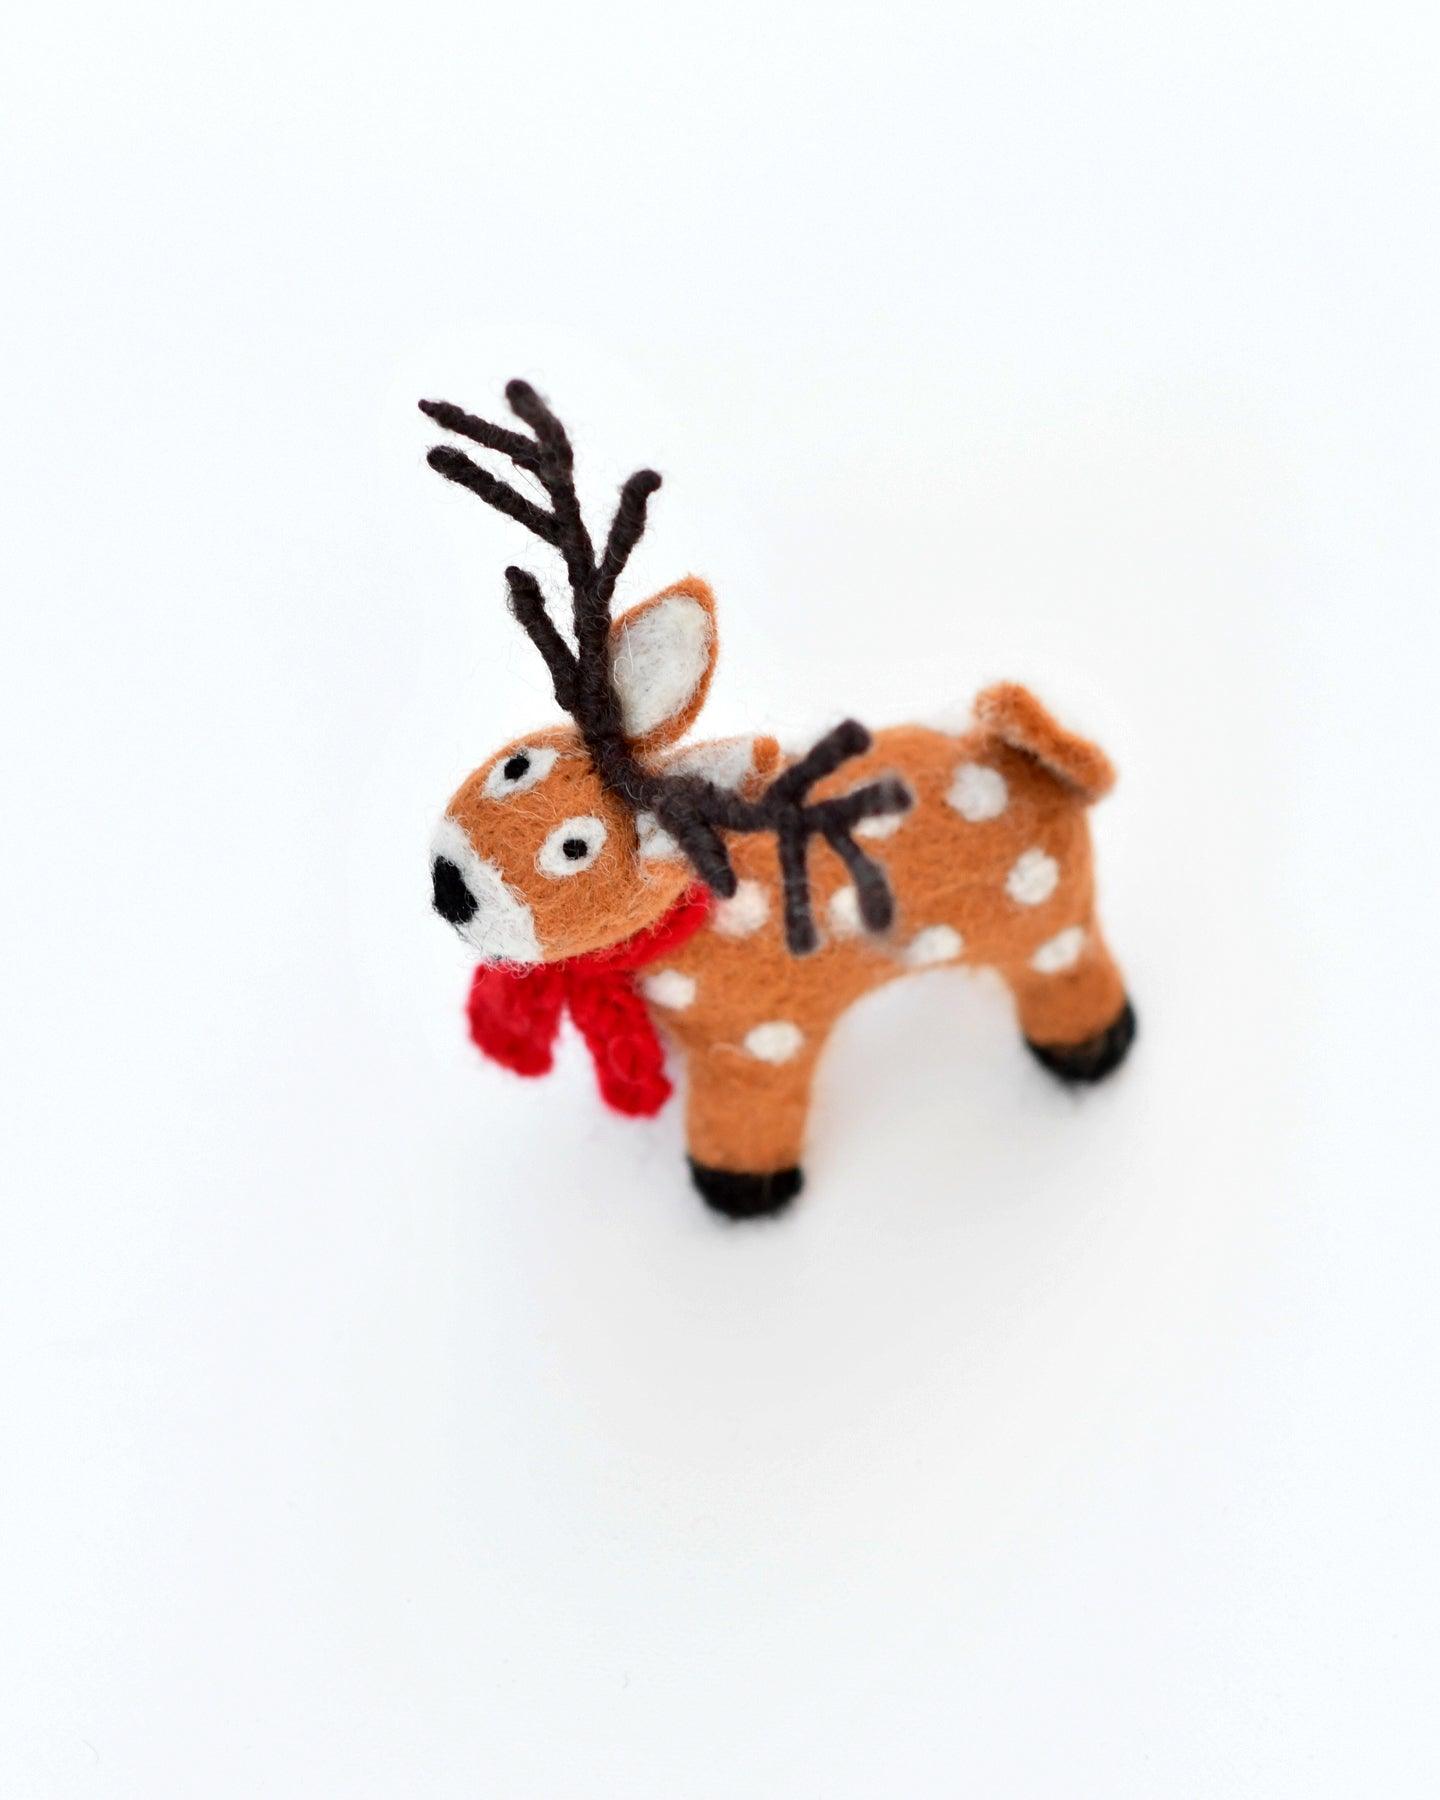 Felt Reindeer with Red Scarf Toy - Tara Treasures